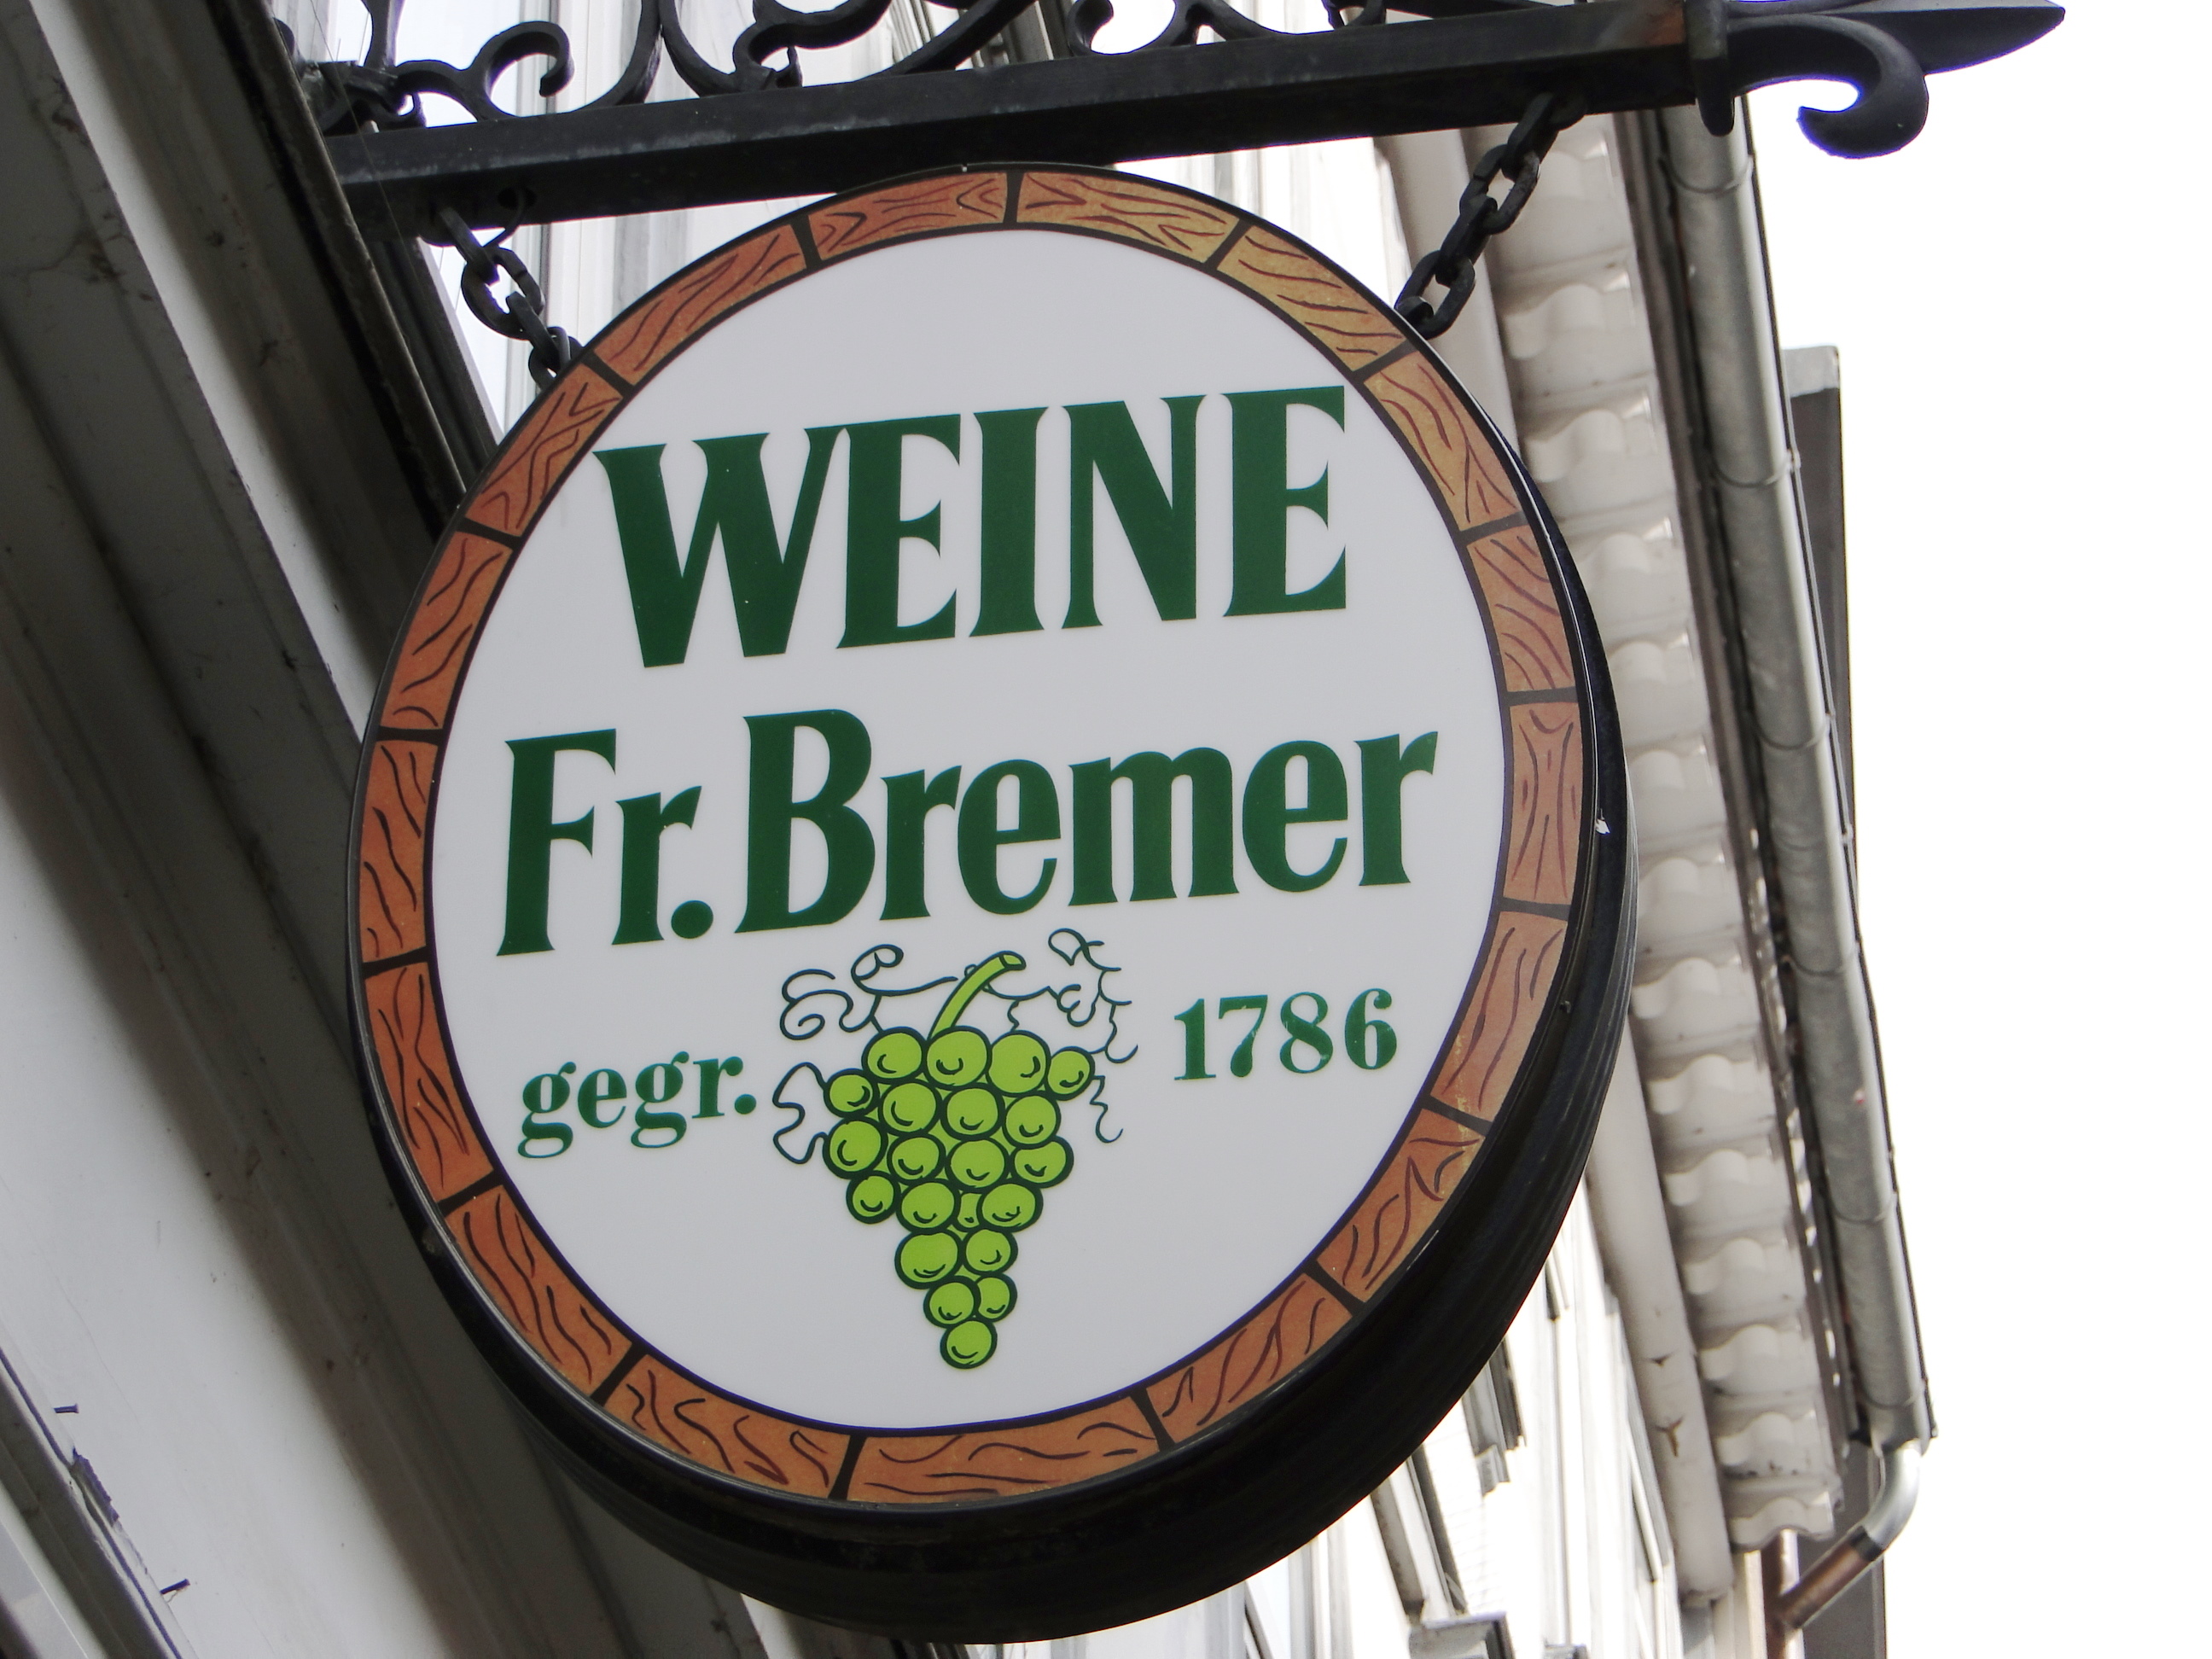 Türschild der Weinhandlung Bremer (alteingesessenes Göttinger Geschäft) in der Barfüßer Str. 10